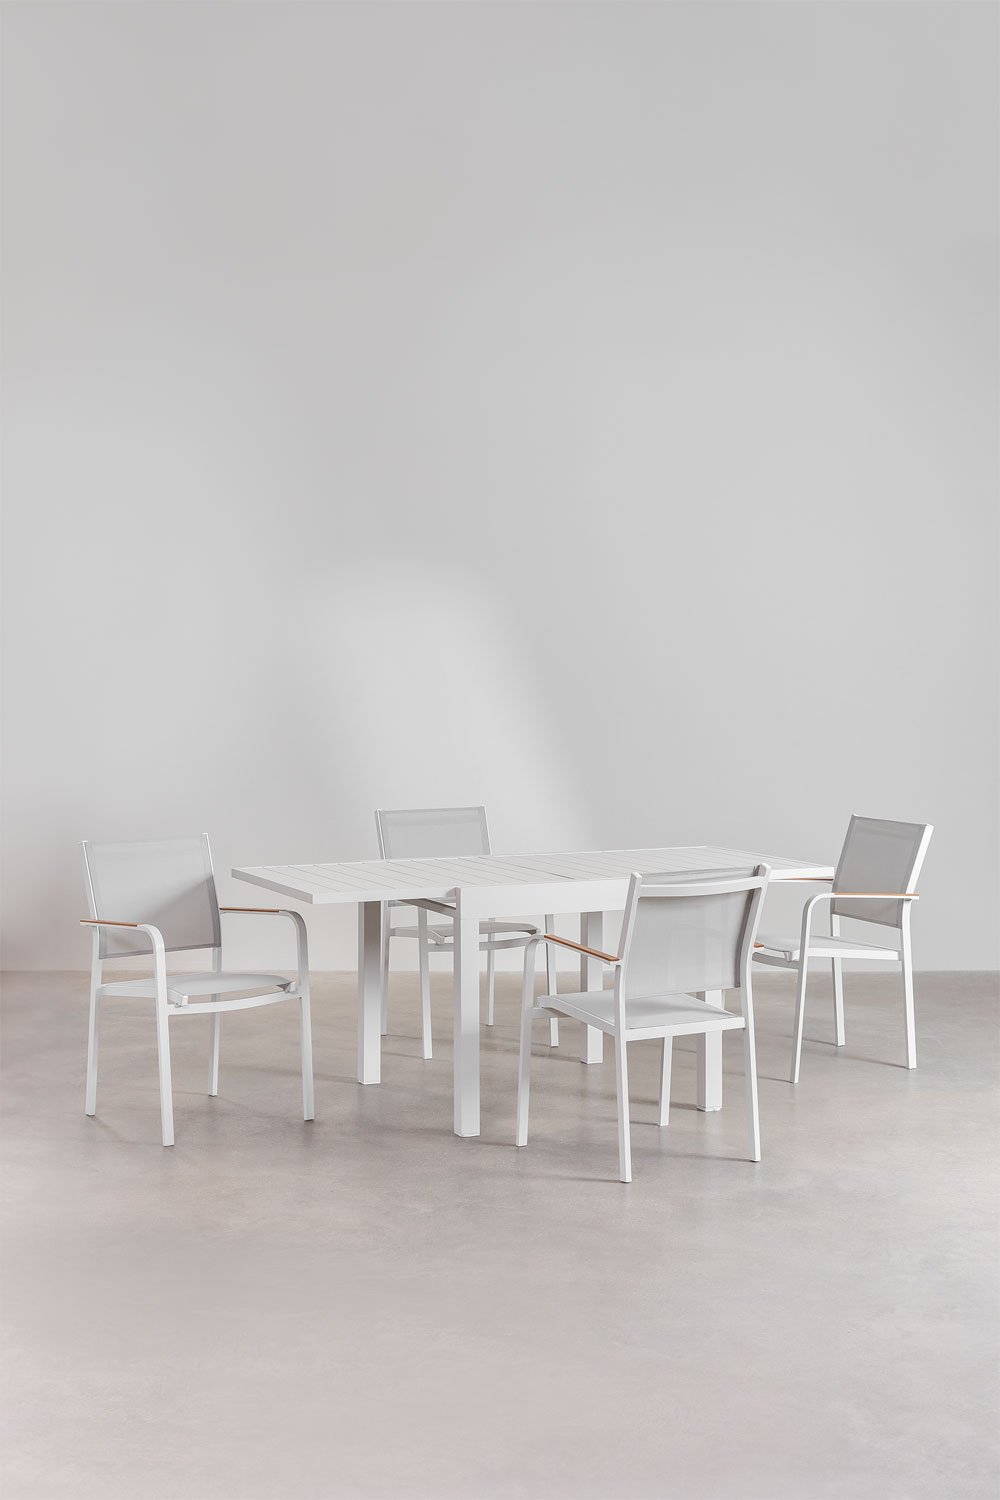 Rozkładany prostokątny stół aluminiowy (90-180x90 cm) Starmi i 4 aluminiowe krzesła ogrodowe Archer do sztaplowania, obrazek w galerii 1